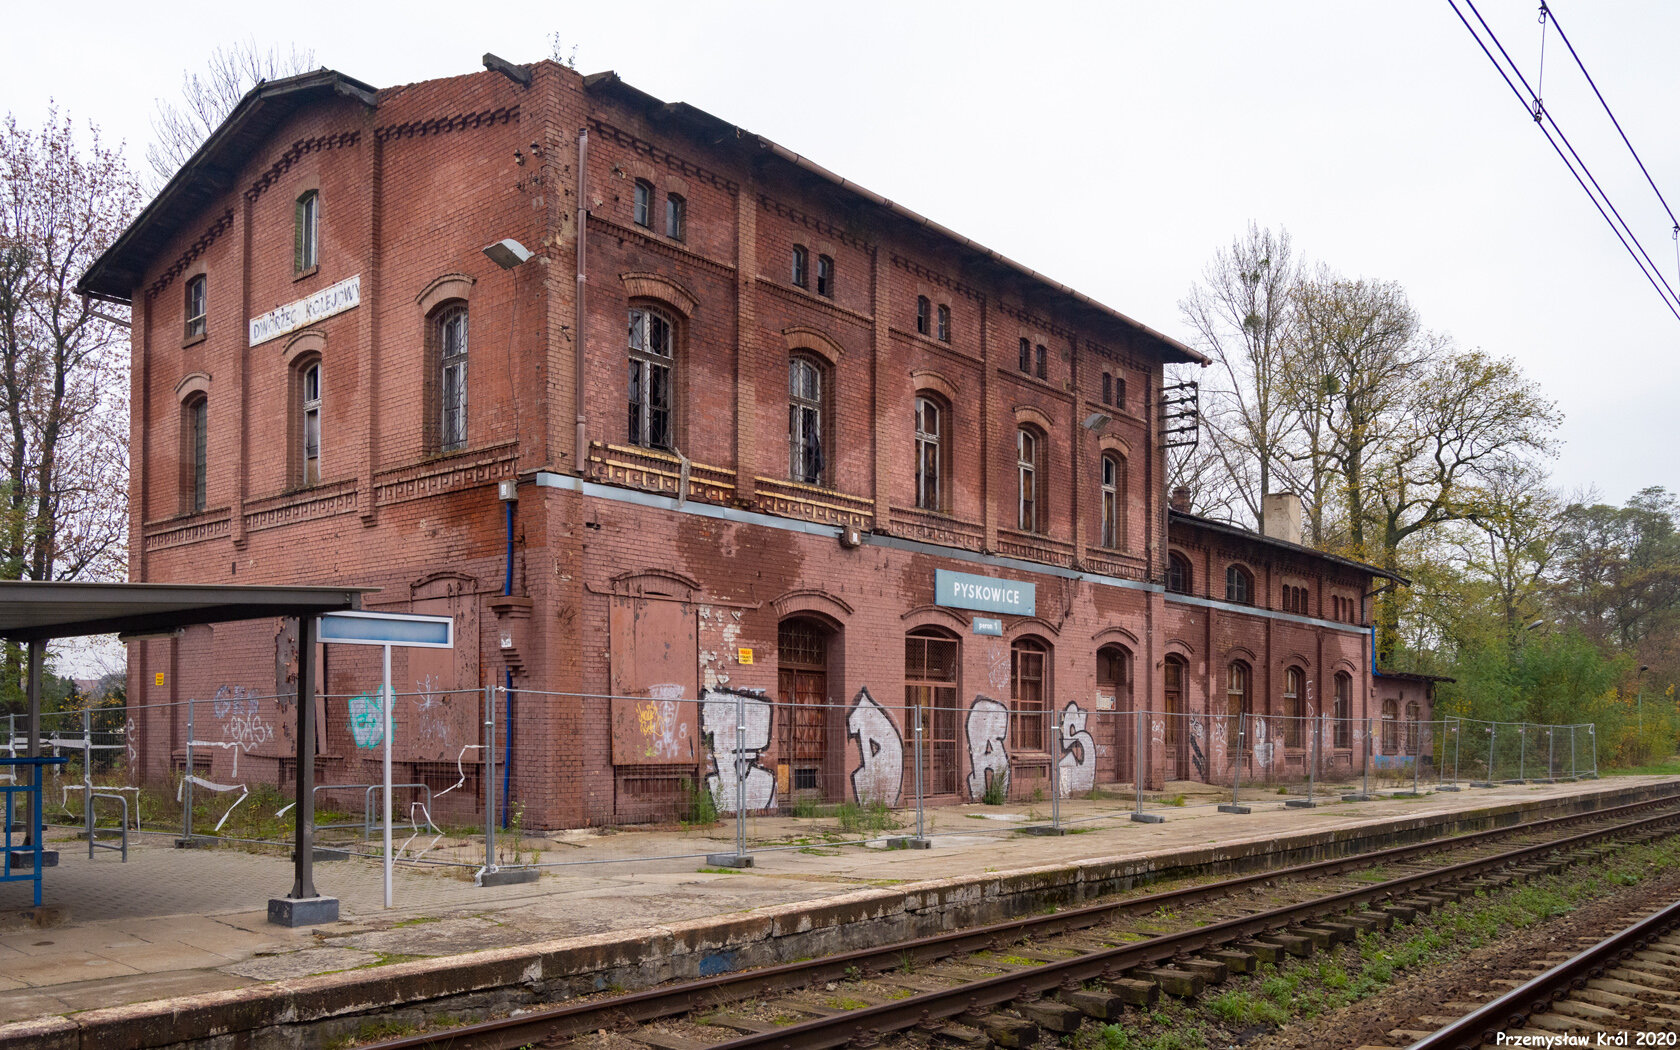 Stacja Pyskowice